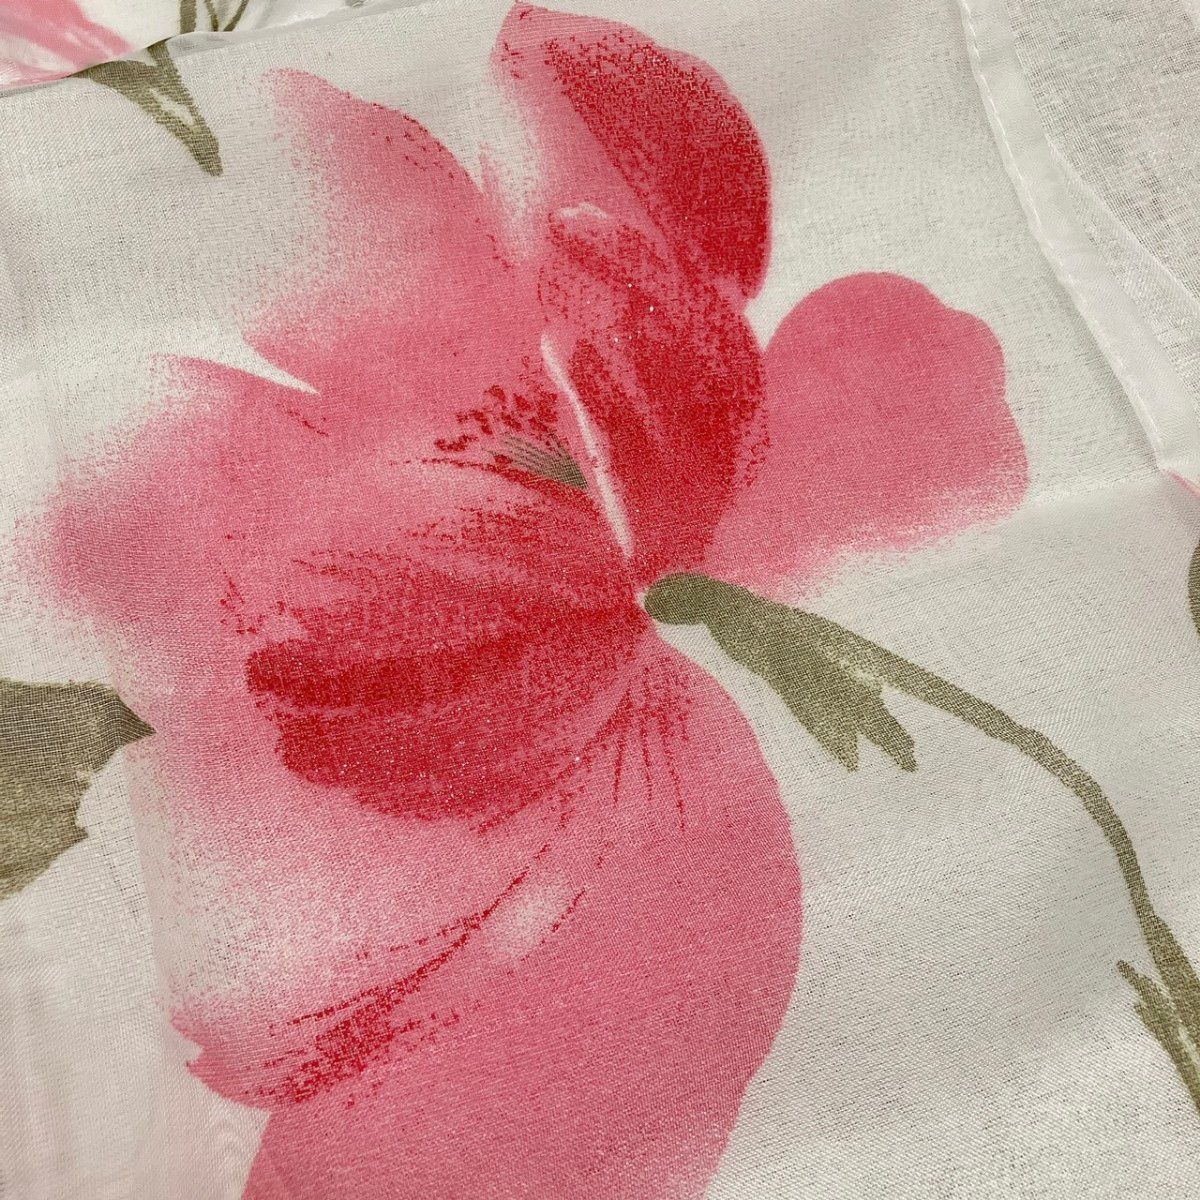 幅100×丈55 カフェカーテン 大柄 ピンク色 花柄 1枚 ラメ のれん 小窓